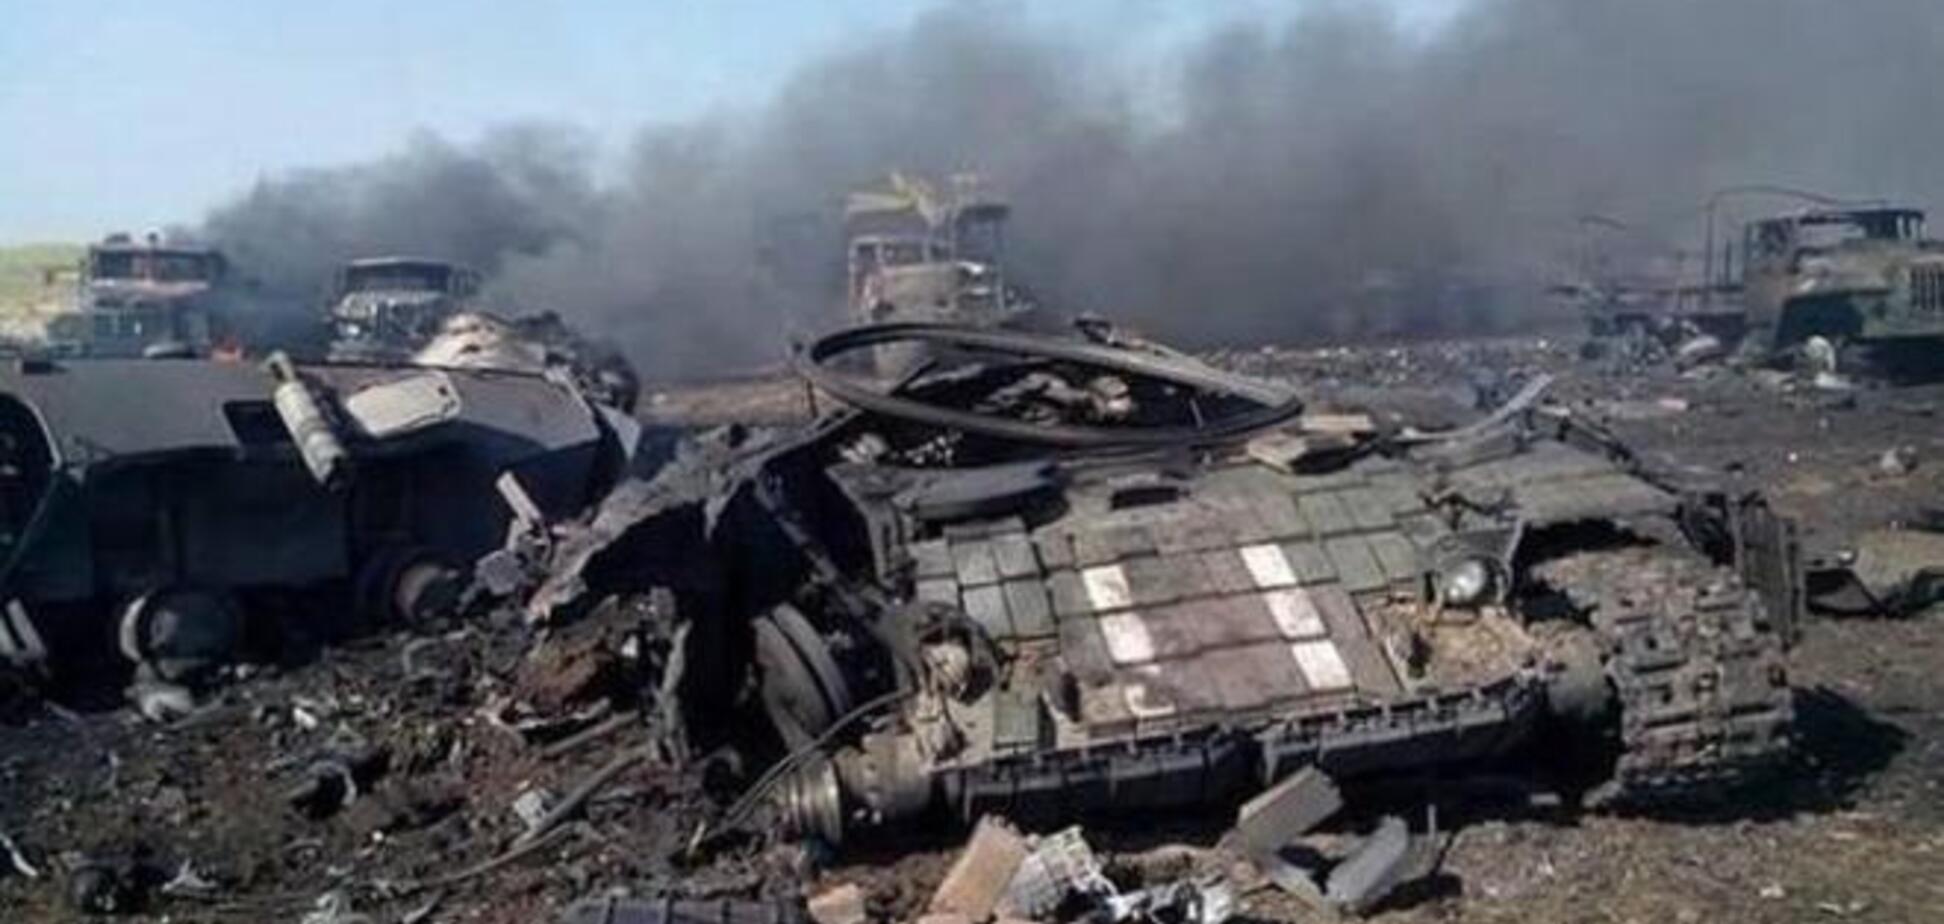 Украинская артиллерия уничтожила в Донецке 200 террористов и 20 'Градов' - Ярош